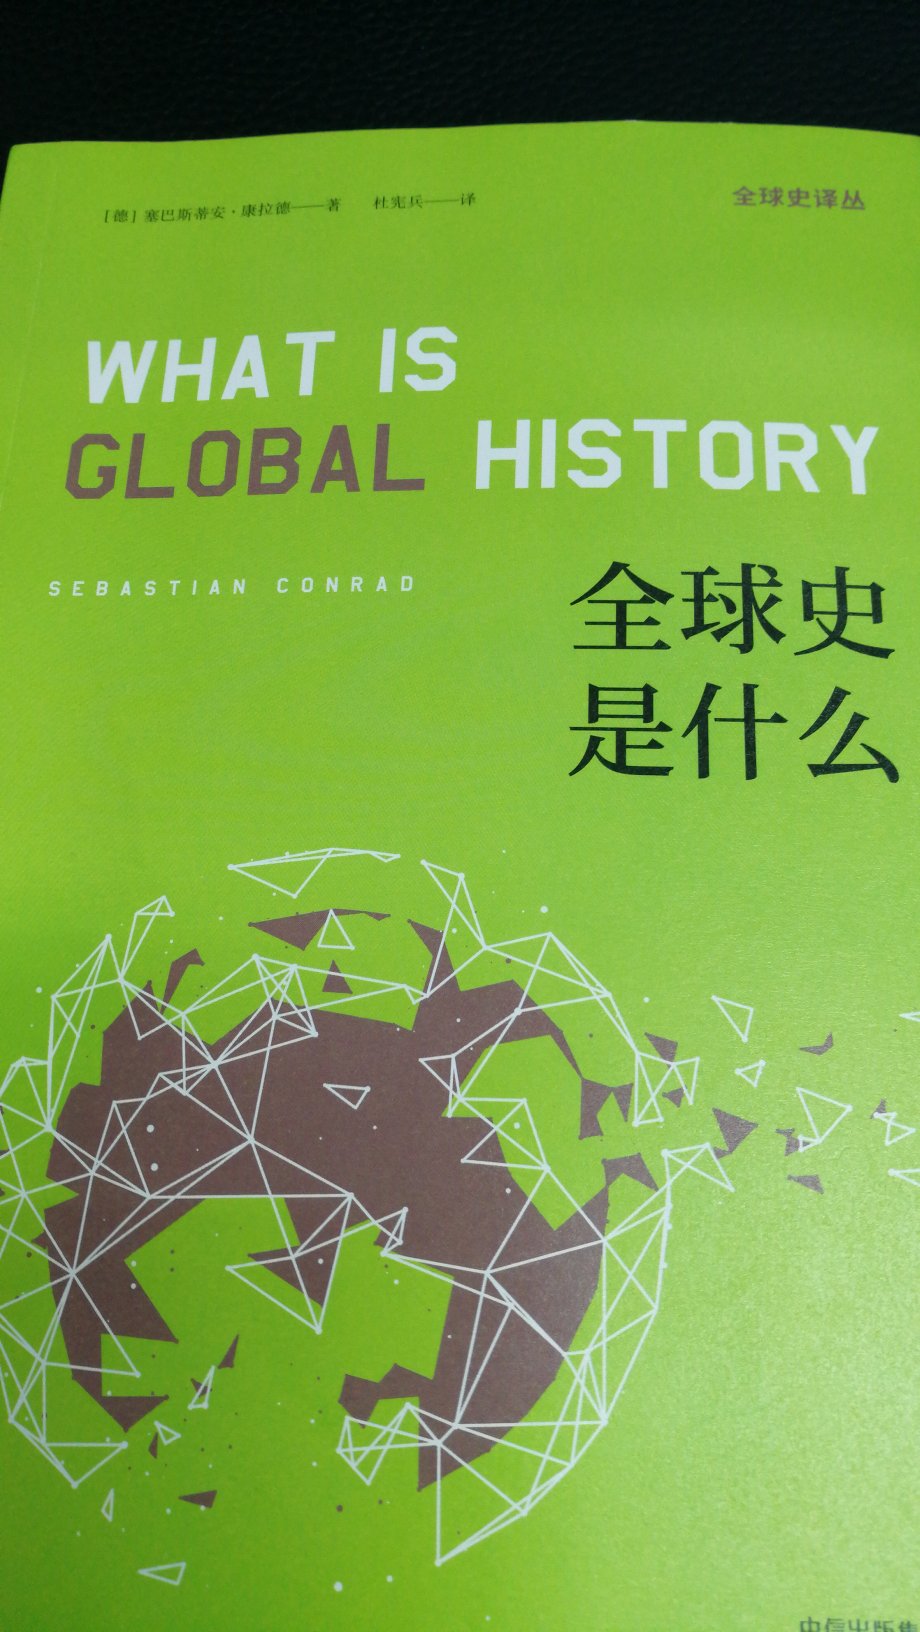 这本书对于全球史的兴起发展，优缺点都进行了比较清楚的梳理，对于了解该学科的发展有参考意义。